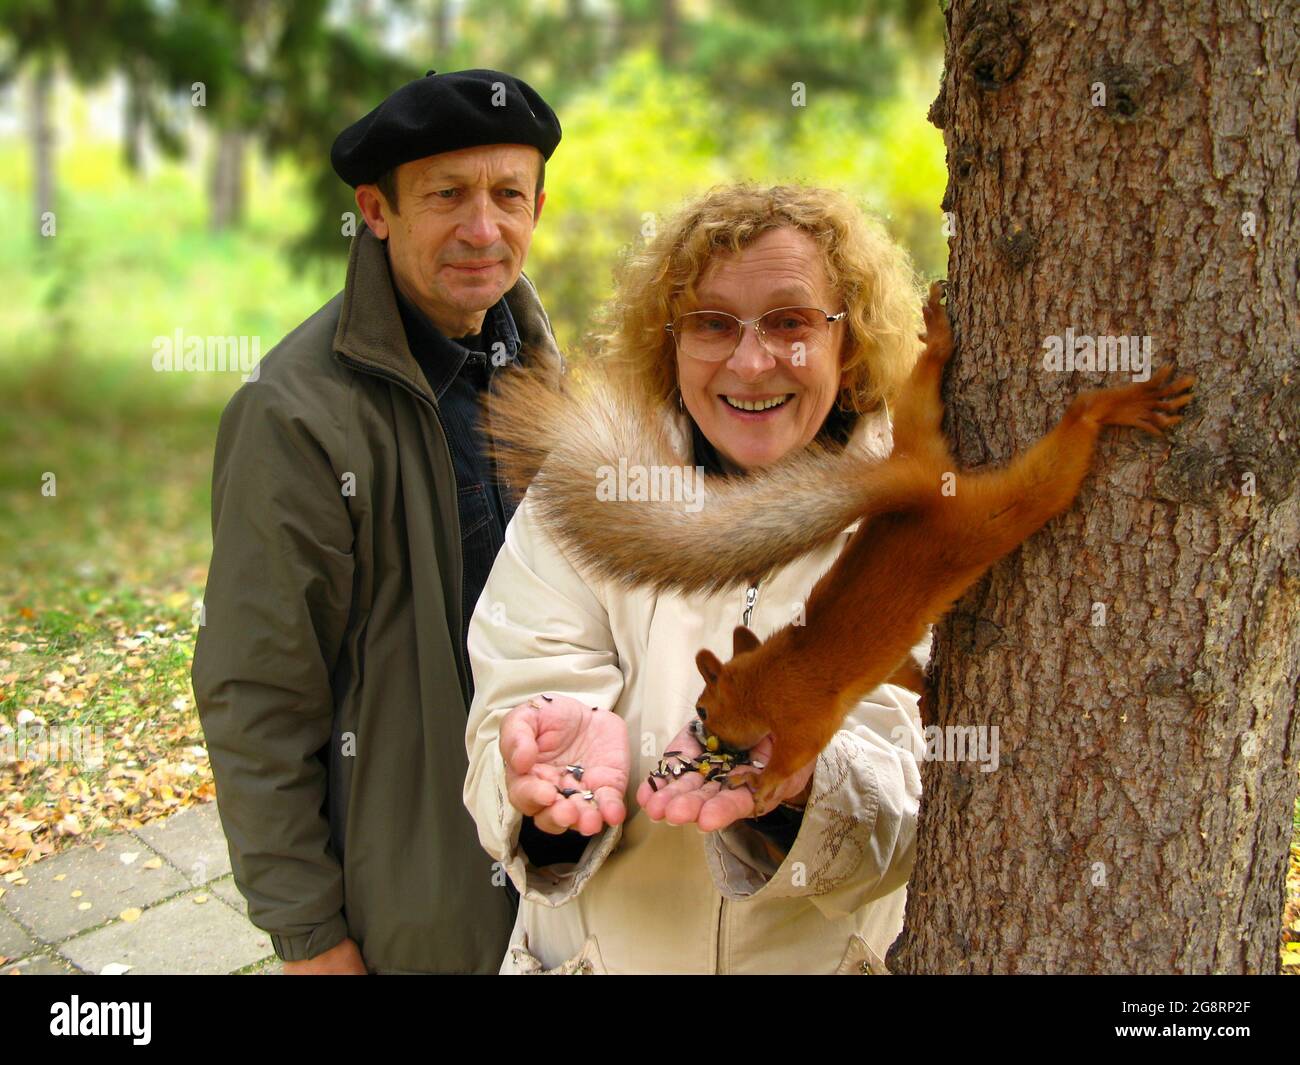 Felici e sorridenti gli anziani nutrono uno scoiattolo nel parco. Il concetto di ecologia, il rafforzamento delle relazioni familiari e l'escursionismo. Foto Stock